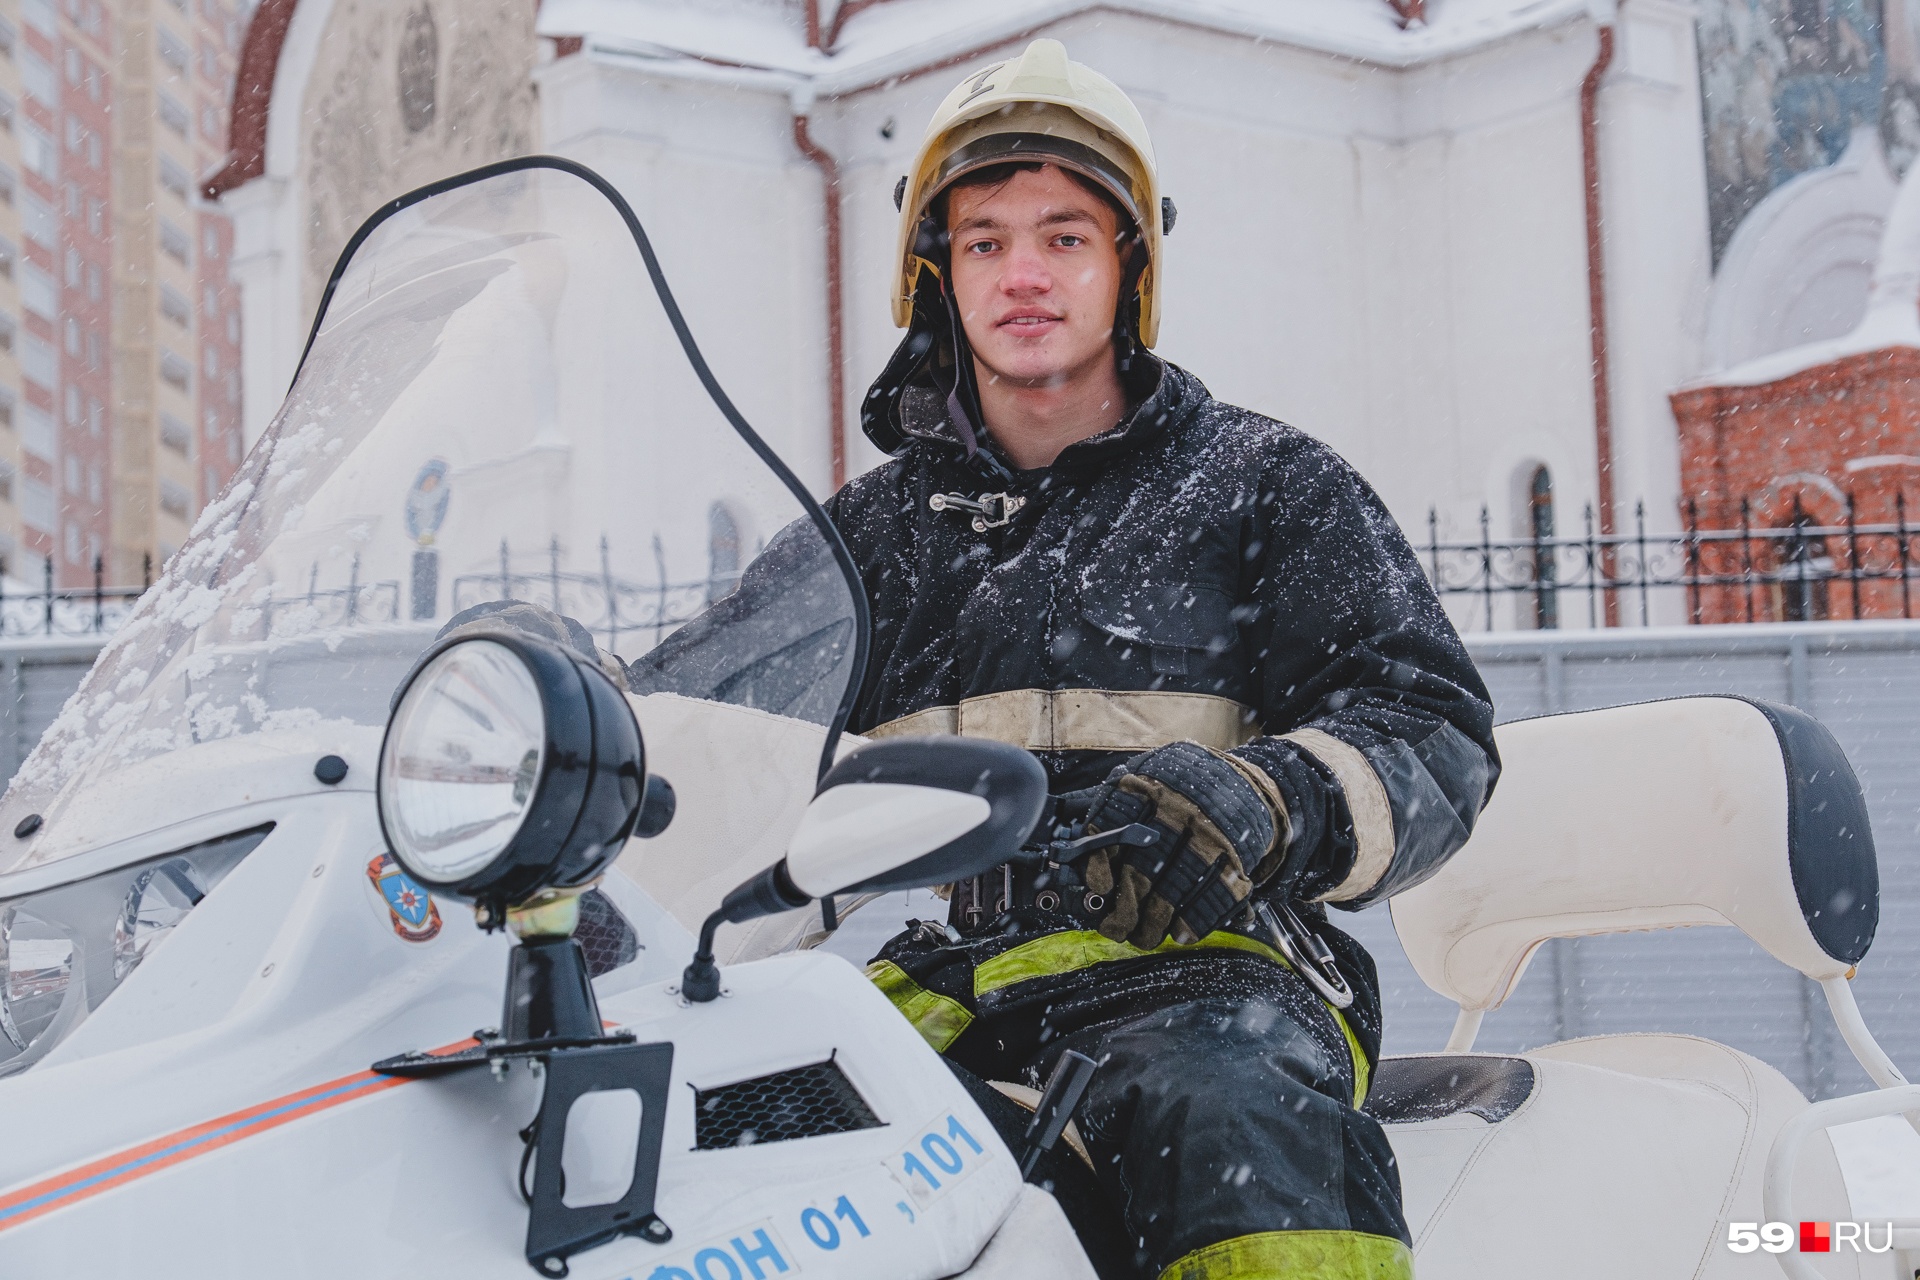 Владислав работает пожарным <nobr class="_">2,5 года</nobr> и набирается опыта